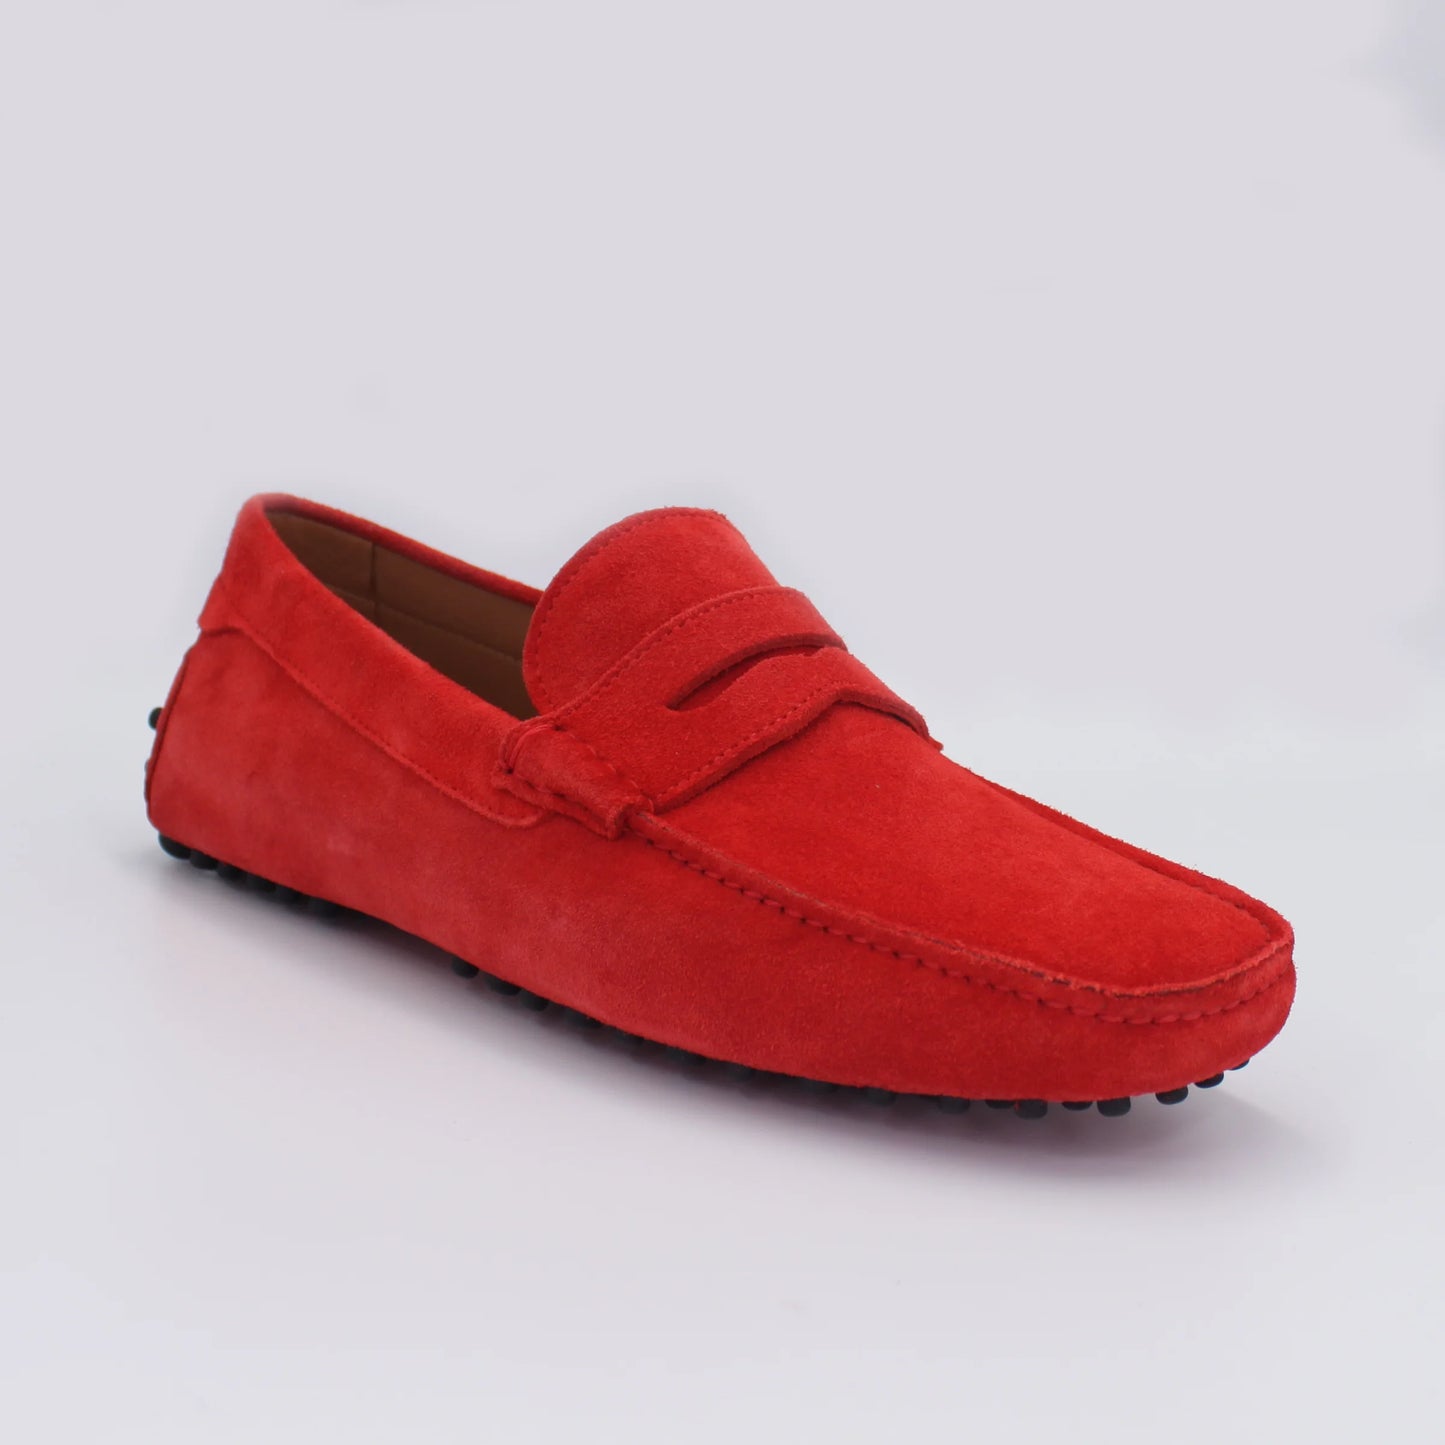 Men's Moccasin in Calf Leather Suede in Rubino Red (CONU460002)